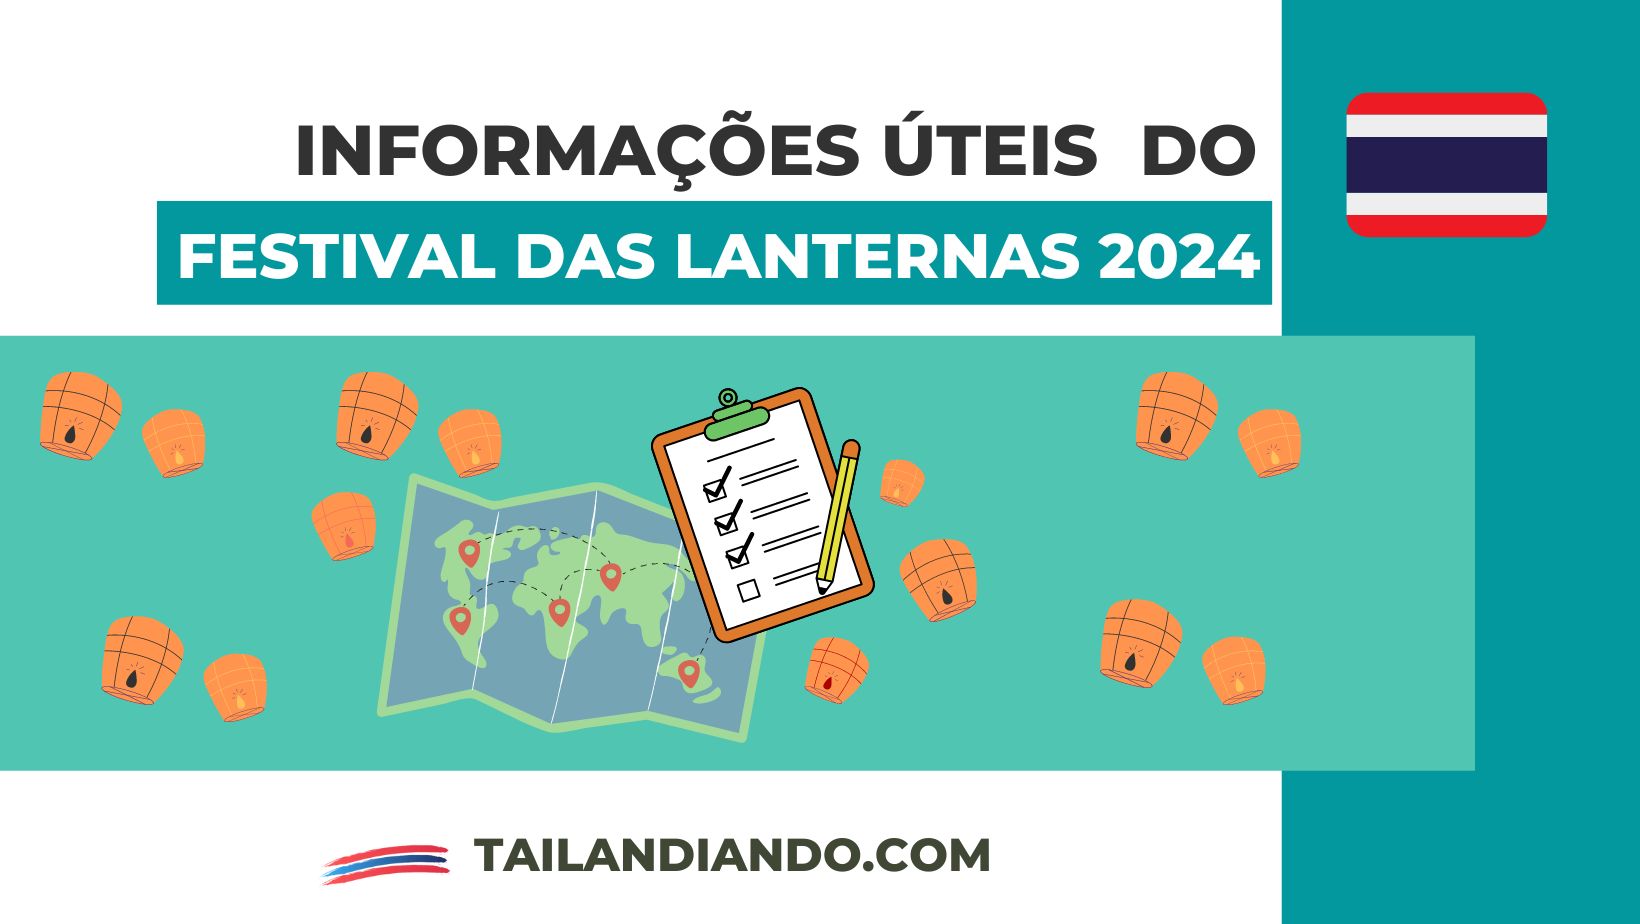 Informações úteis sobre o Festival das Lanternas 2024